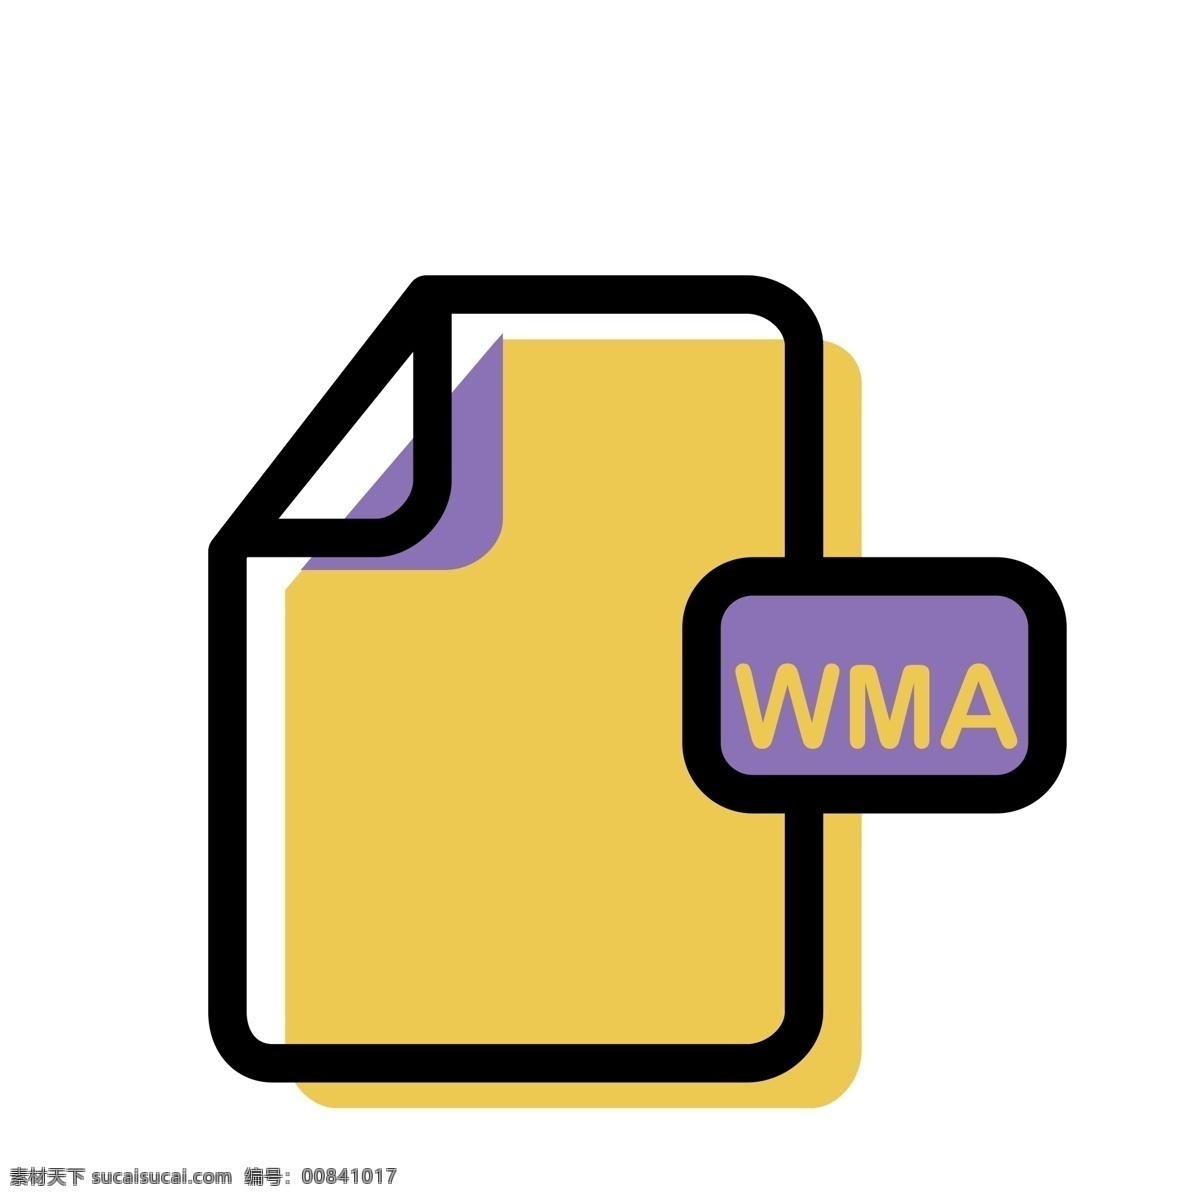 wma 格式 文件 免 抠 图 wma文件 软件图标 格式文件 ui应用图标 电脑文件图标 软件格式 卡通图案 卡通插画